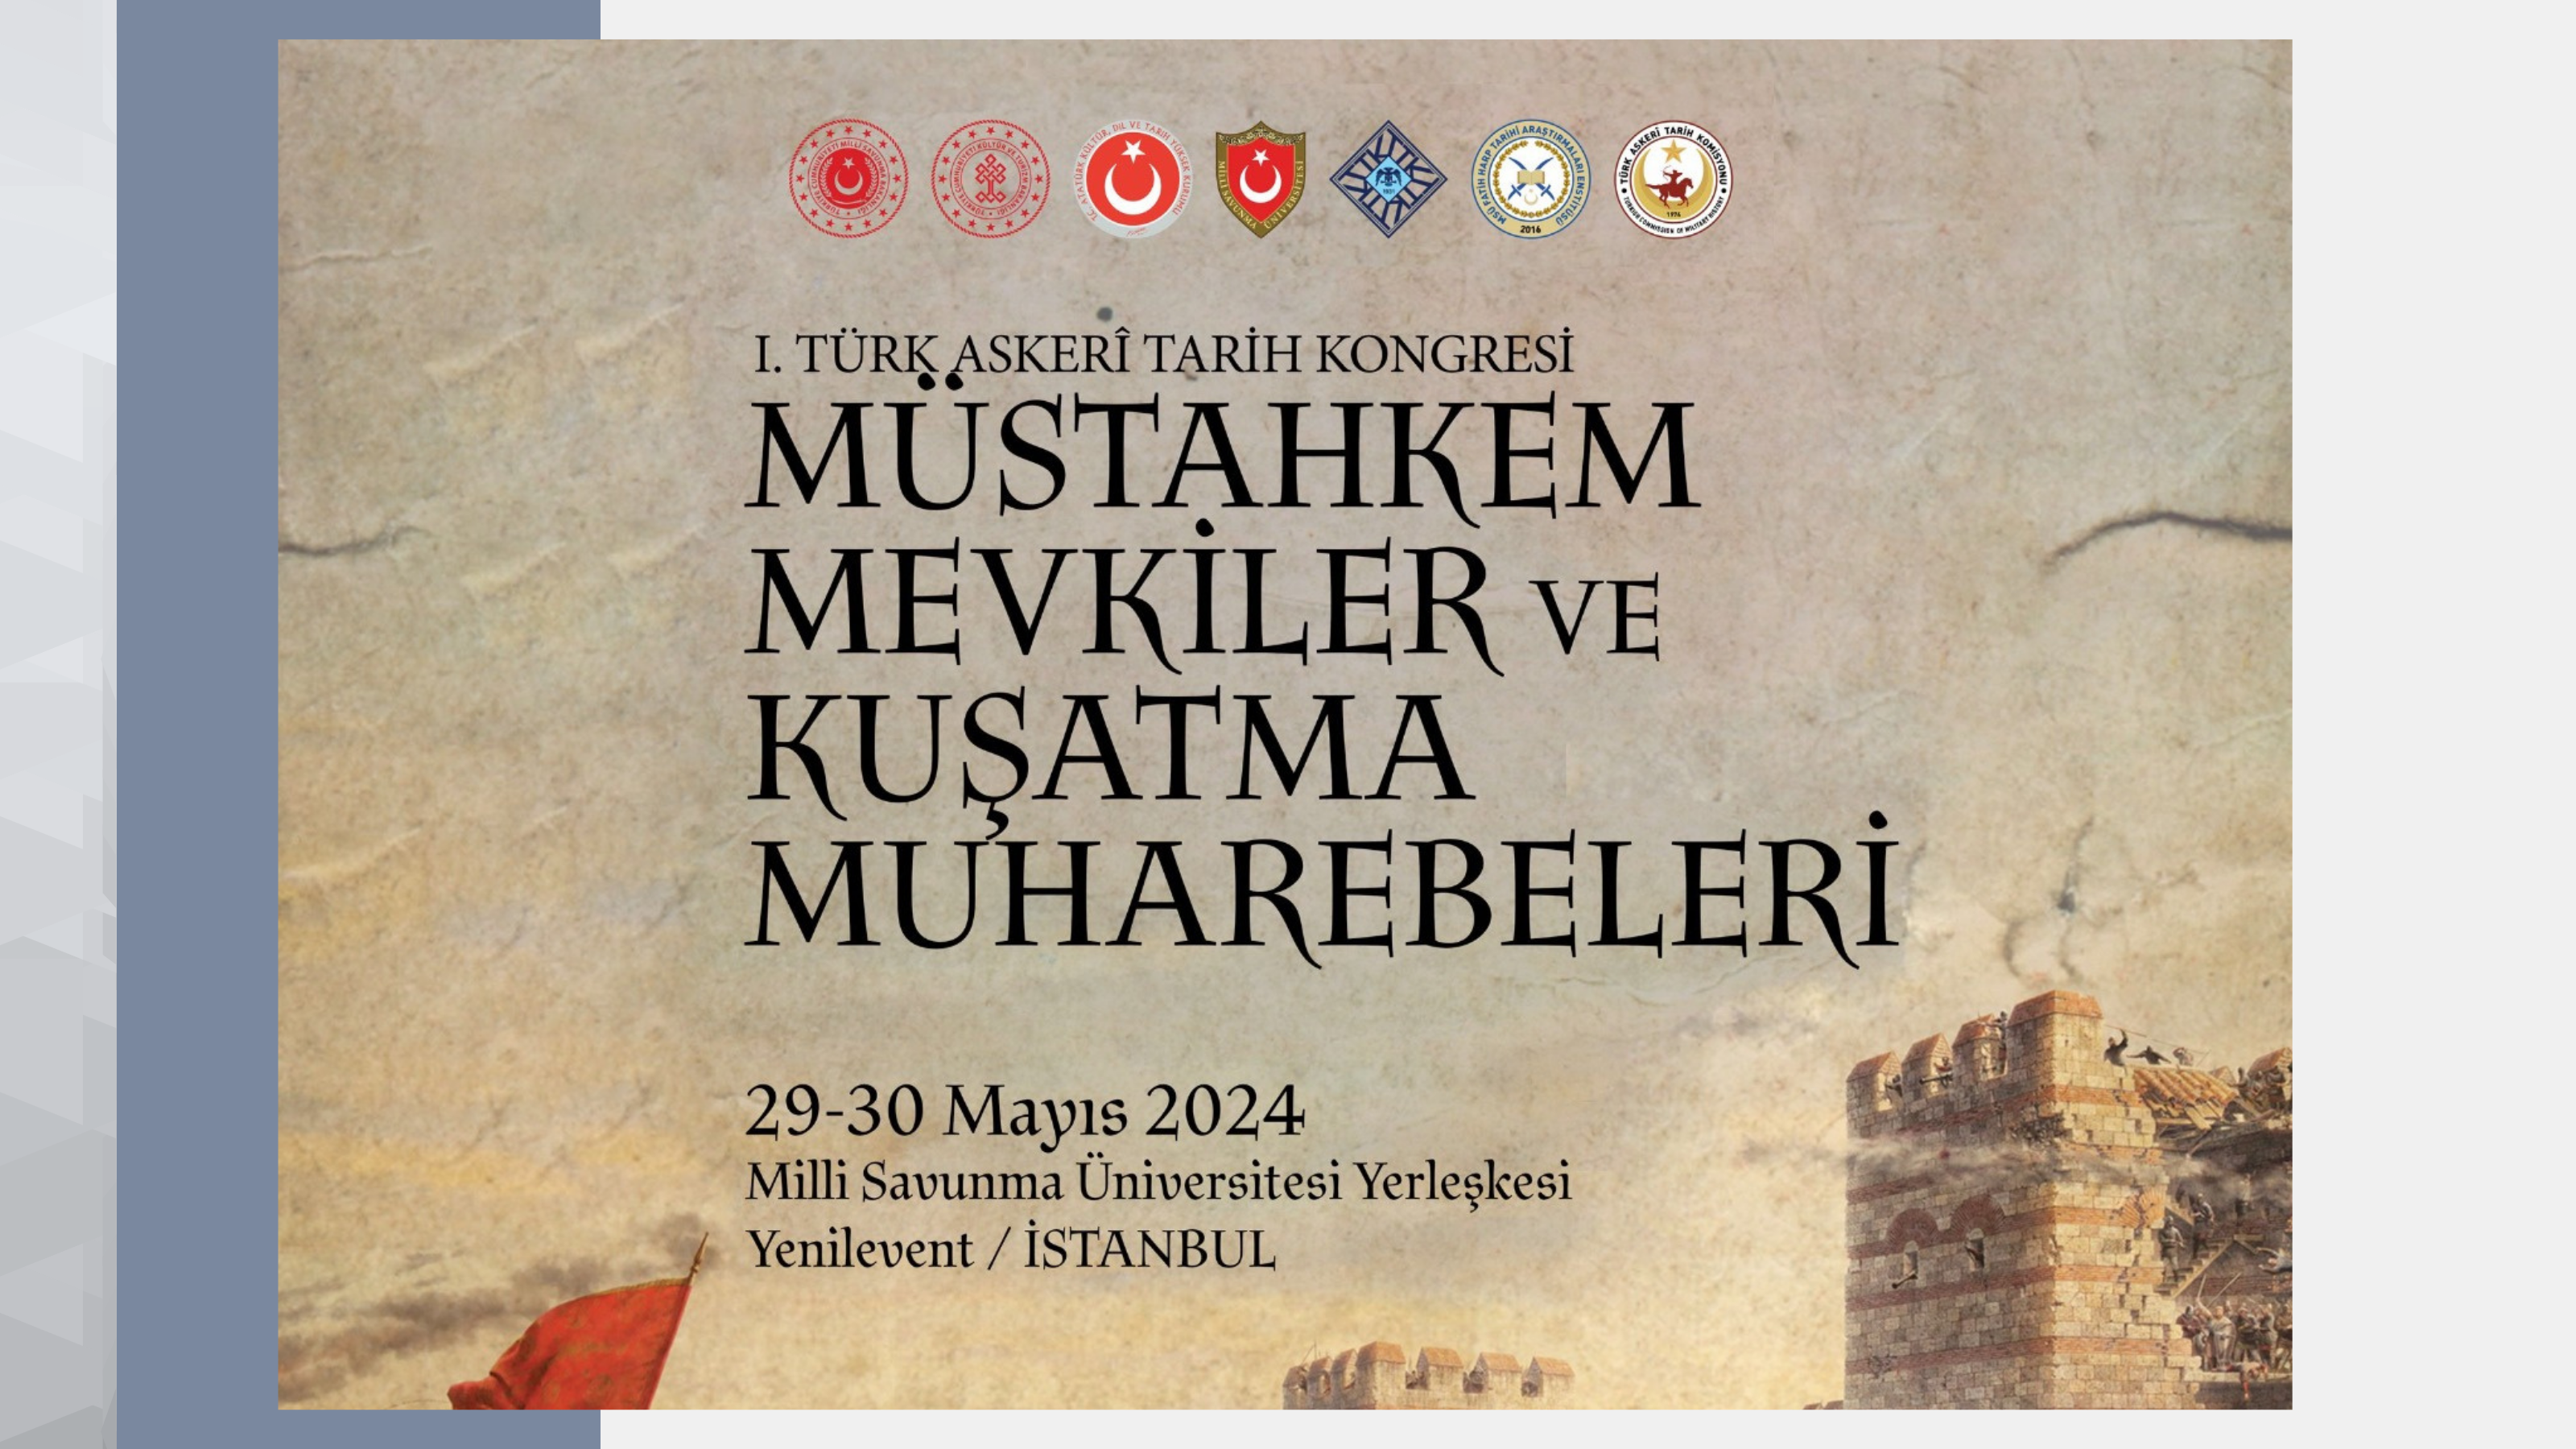 “I. Türk Askerî Tarih Kongresi: Müstahkem Mevkiler ve Kuşatma Muharebeleri” Düzenlenecektir.